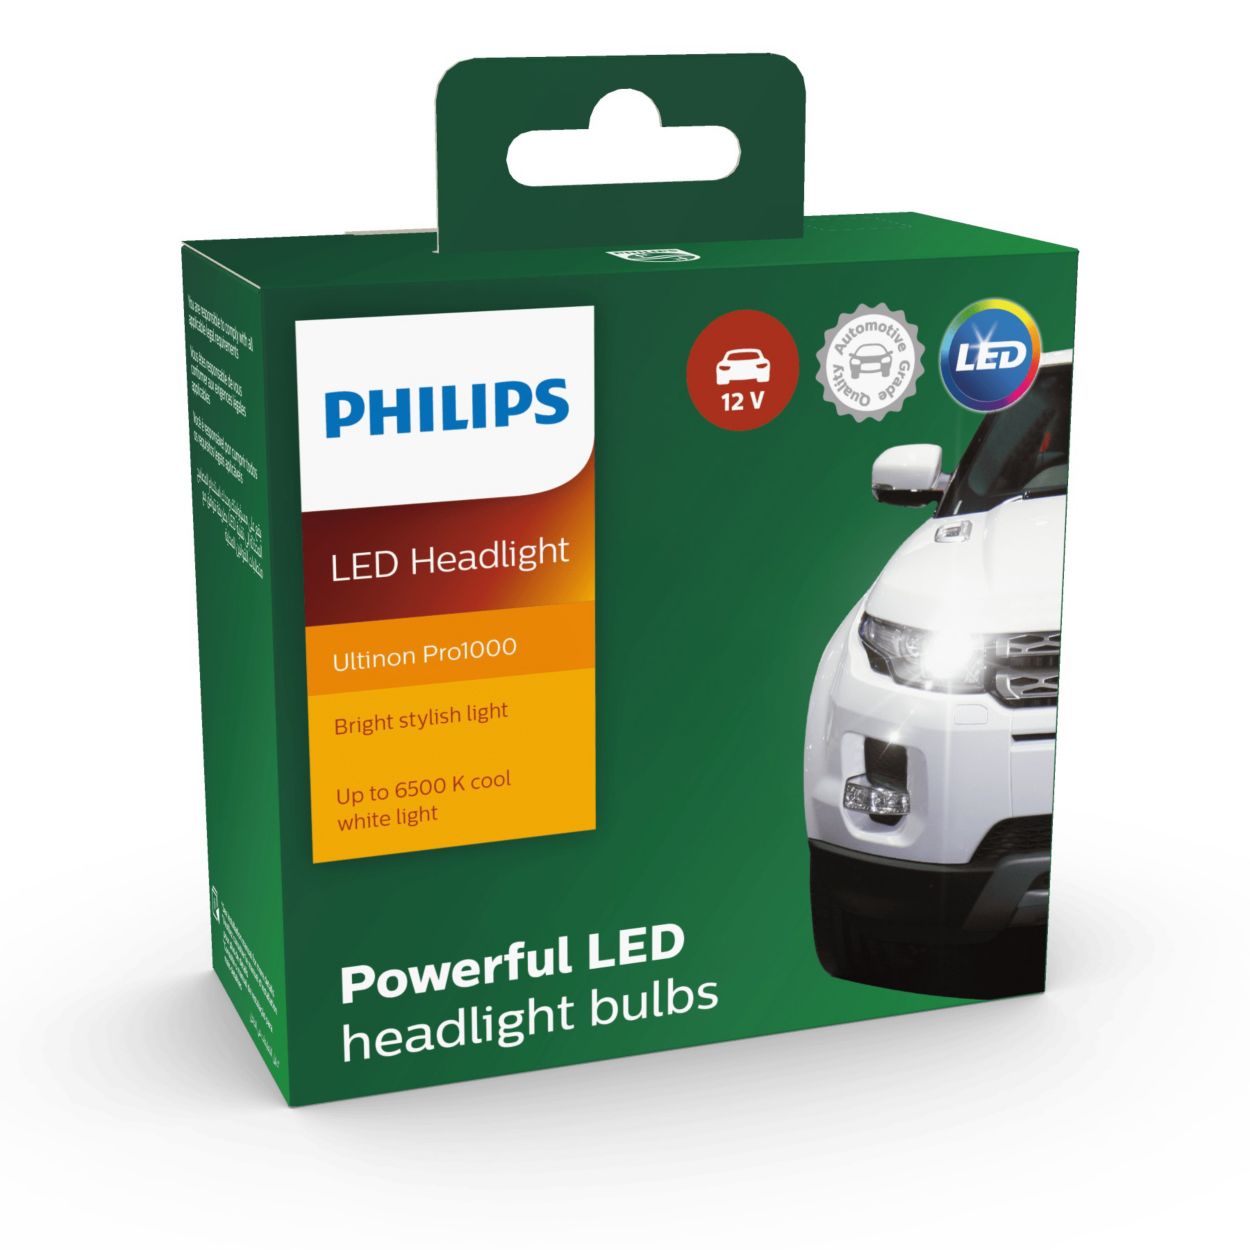 💡 ENDLICH Philips bringt erste legale H4 LED Lampe Ultinon PRO